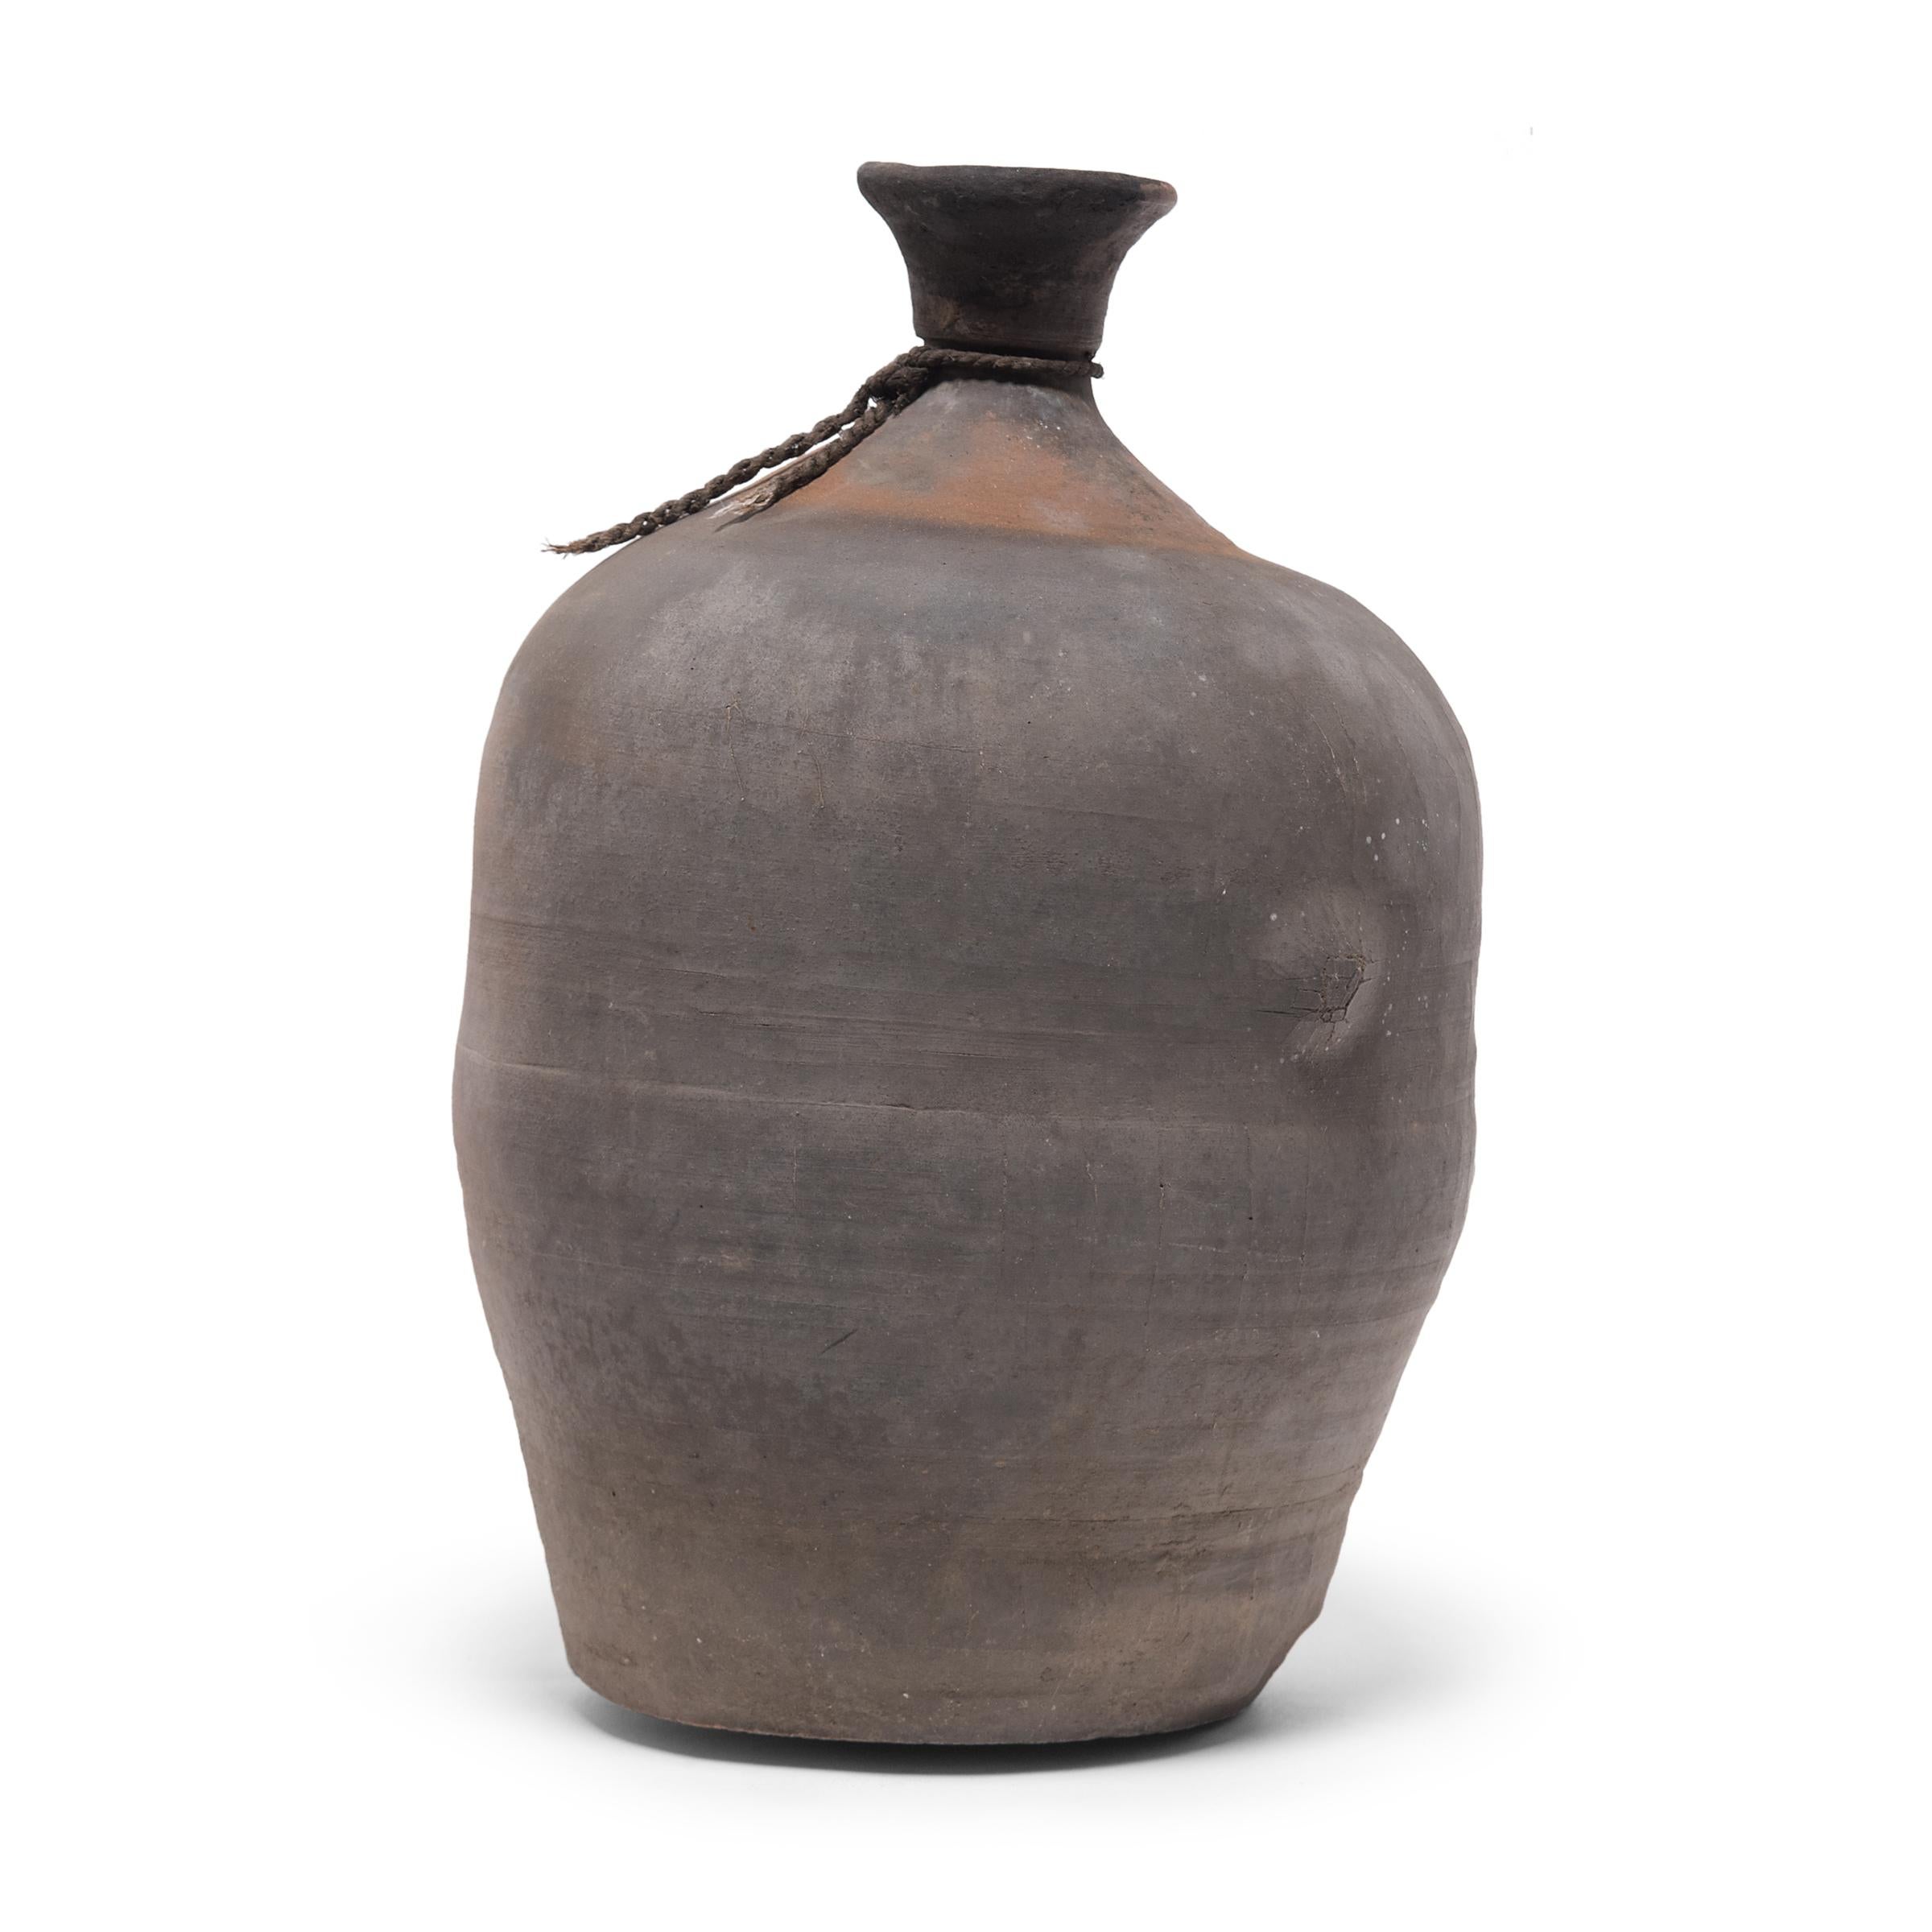 Cette jarre en céramique de la province chinoise de Shandong a la forme d'un goulot de bouteille destiné à conserver du vinaigre ou du vin à base de riz et de céréales. Datée du début du XXe siècle, cette jarre a probablement été créée pour stocker